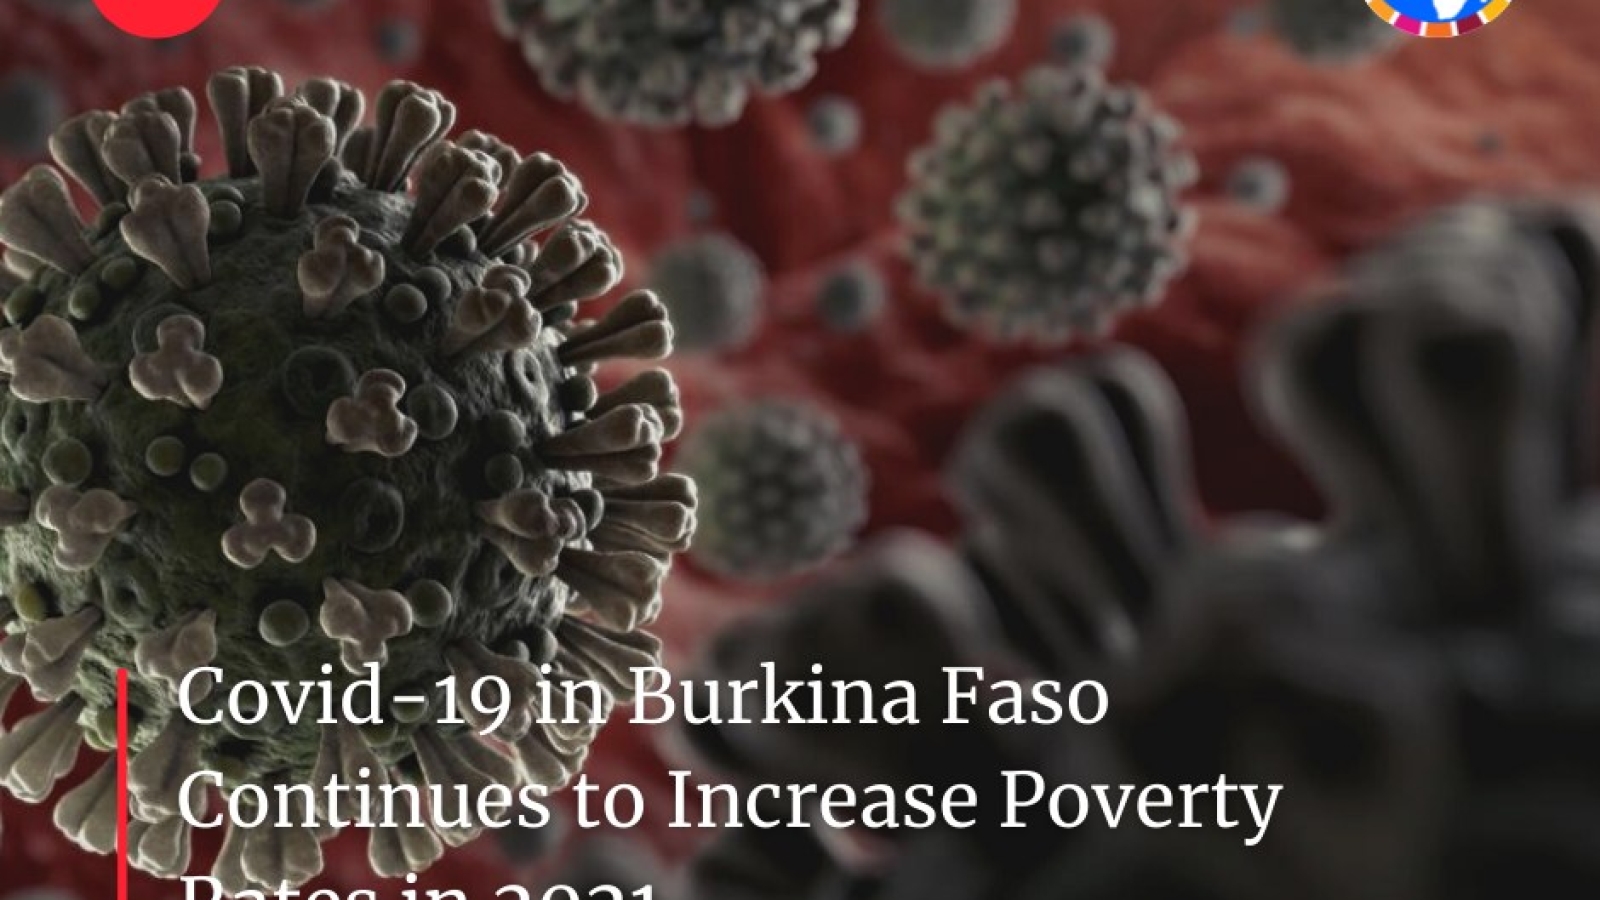 يواصل كوفيد-19 في بوركينا فاسو زيادة معدلات الفقر في عام 2021